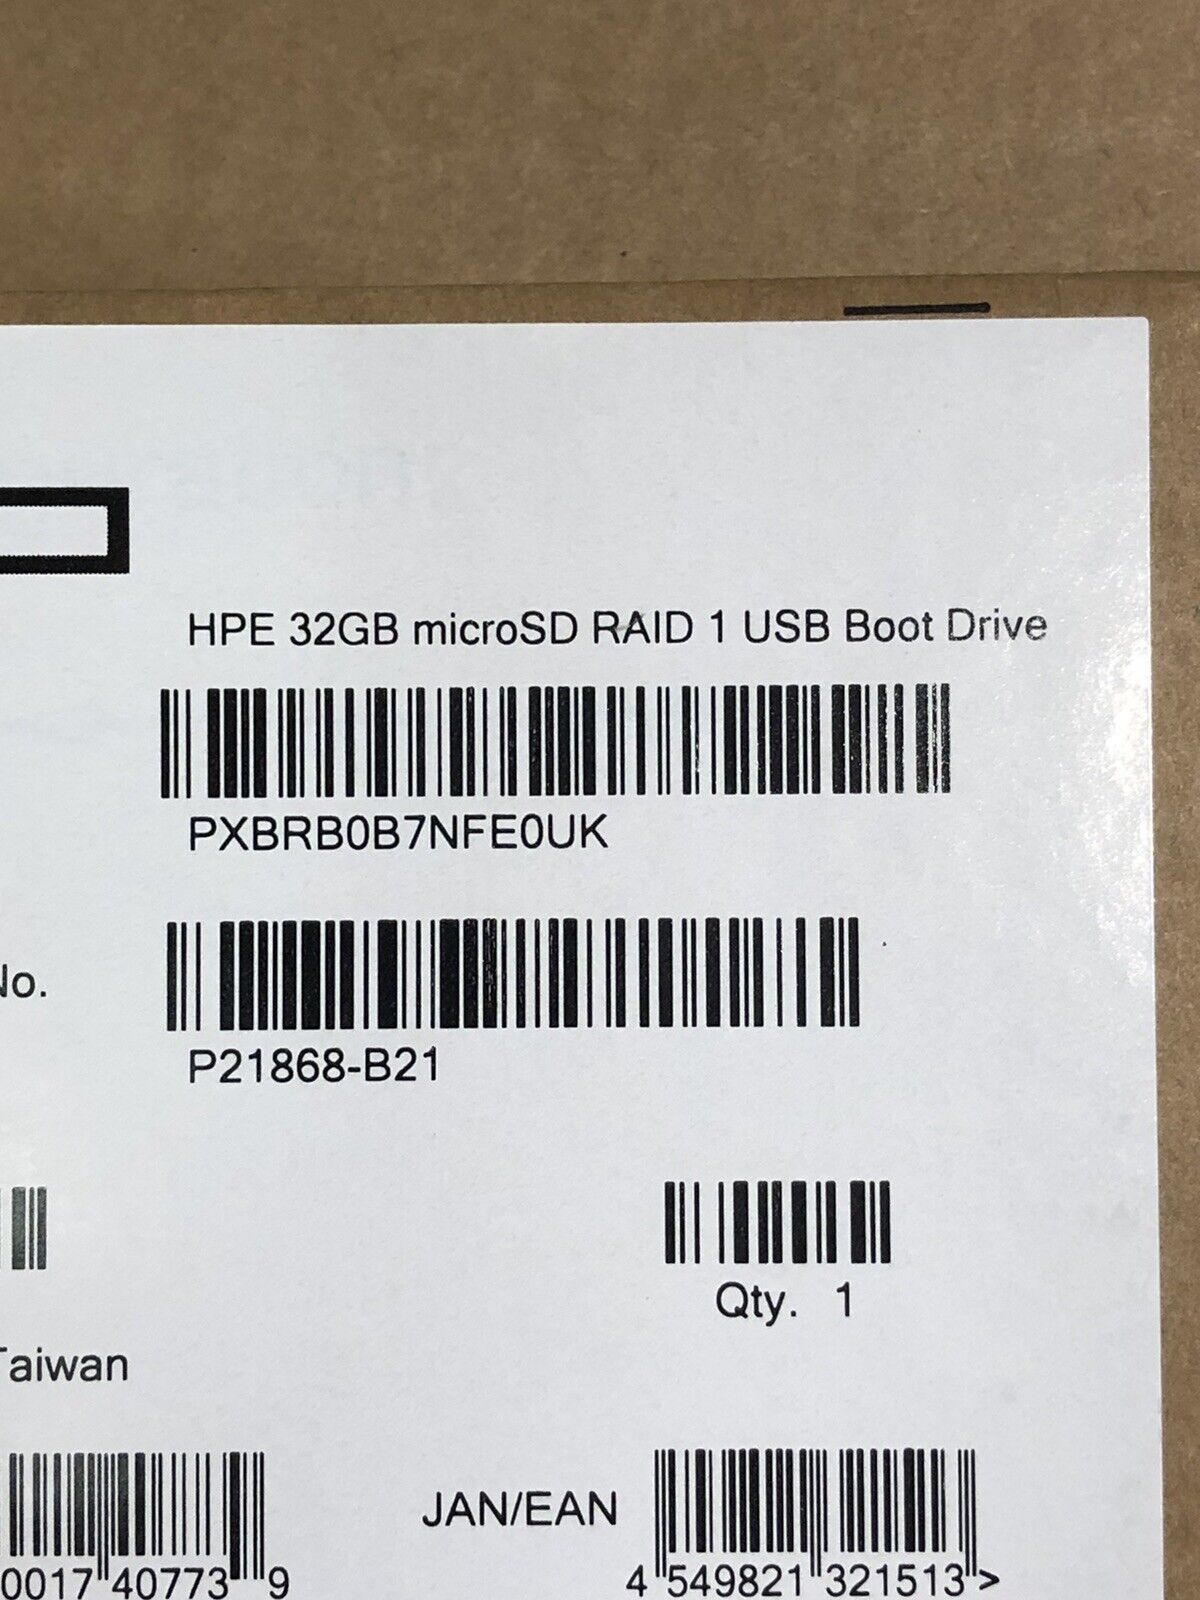 HPE P21868-B21 Bootable Dual 32GB MicroSD Card in Raid 1 Mirror USB Boot Drive P23103-001.